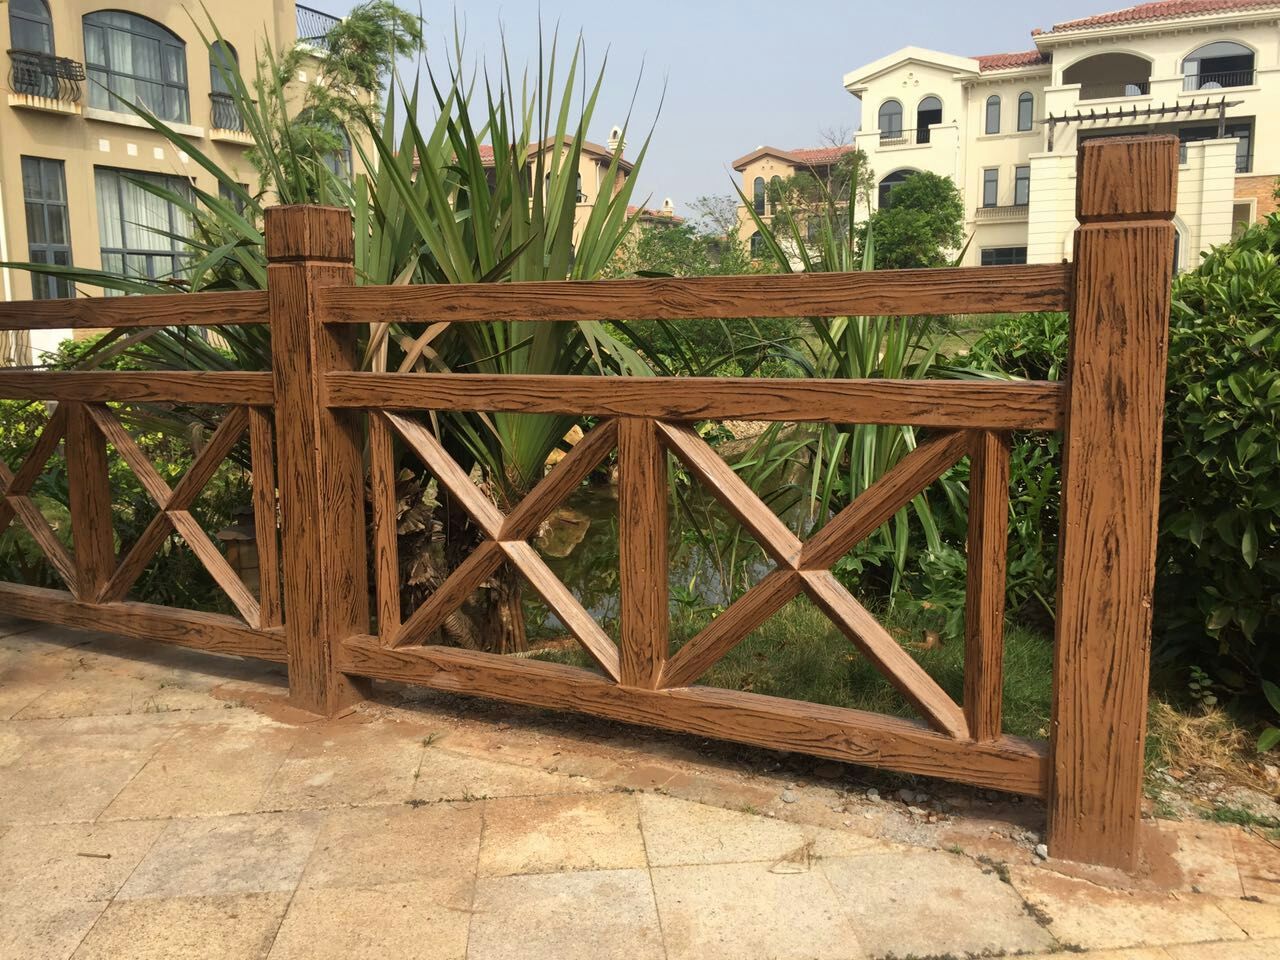 X型仿木护栏 水泥安全栏杆 X型仿古道路围栏 景观庭院护栏 栅栏